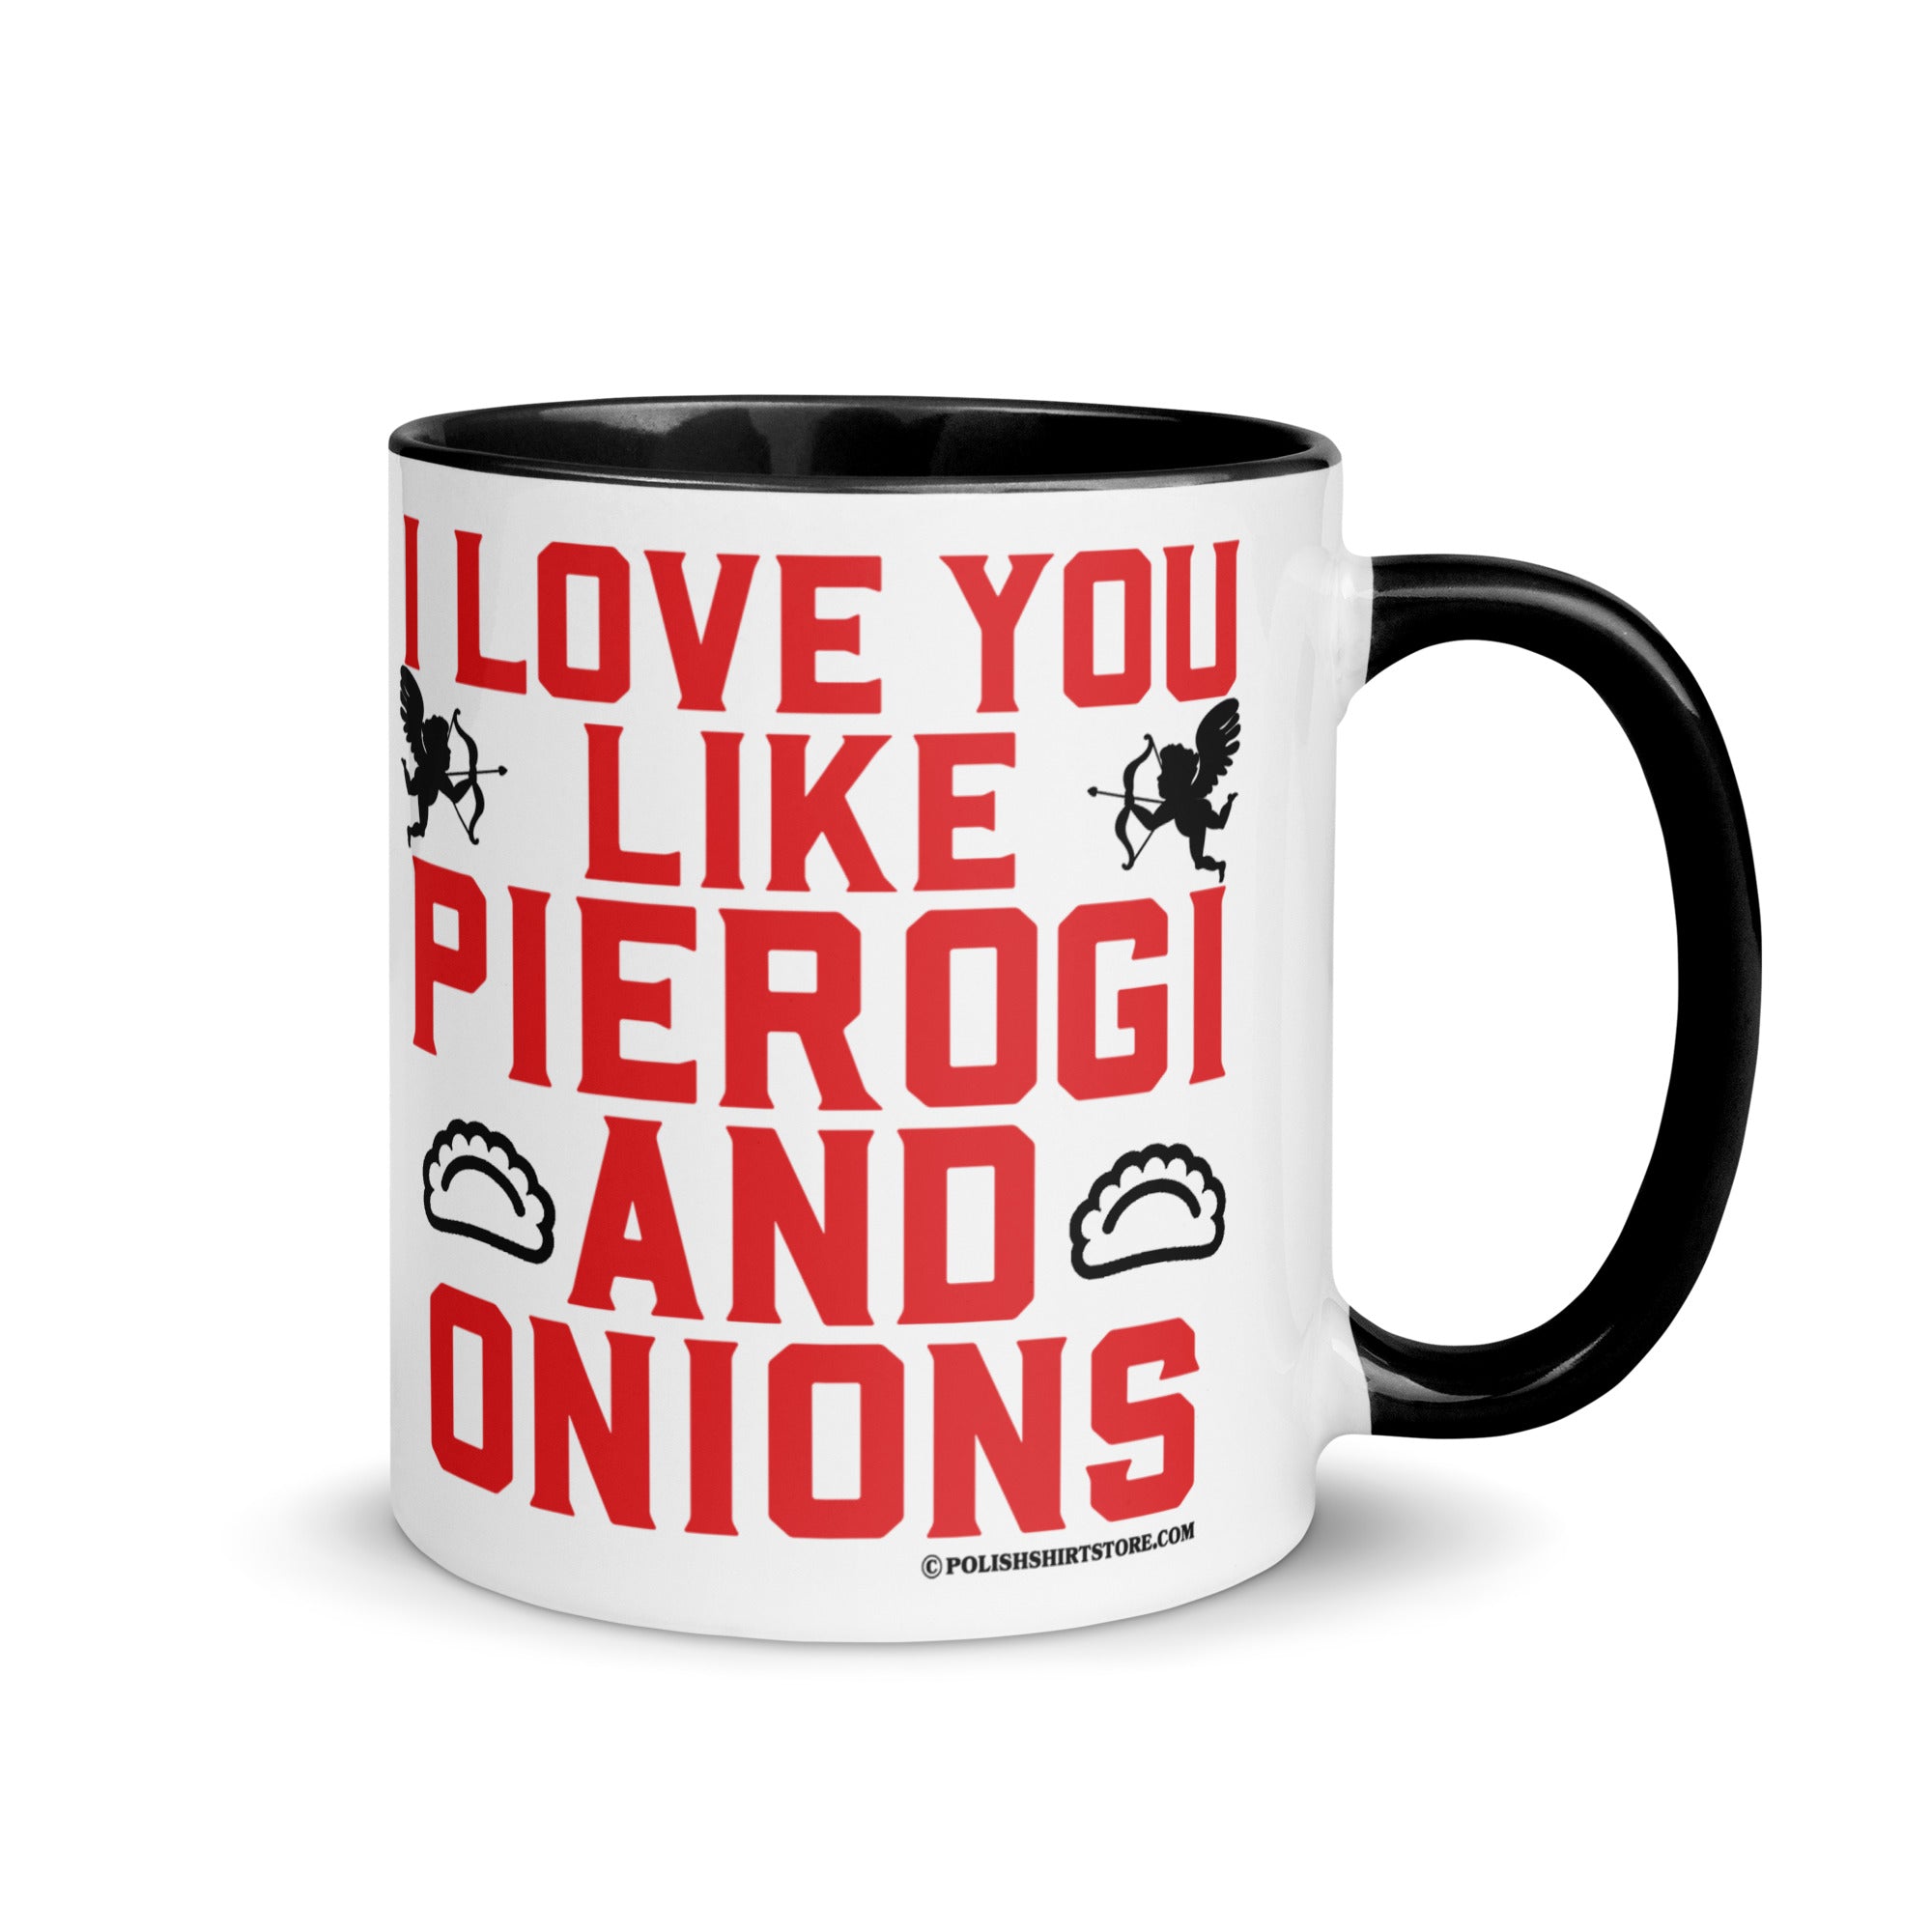 I Love You Like Pierogi And Onions Coffee Mug with Color Inside  Polish Shirt Store Black 11 oz 